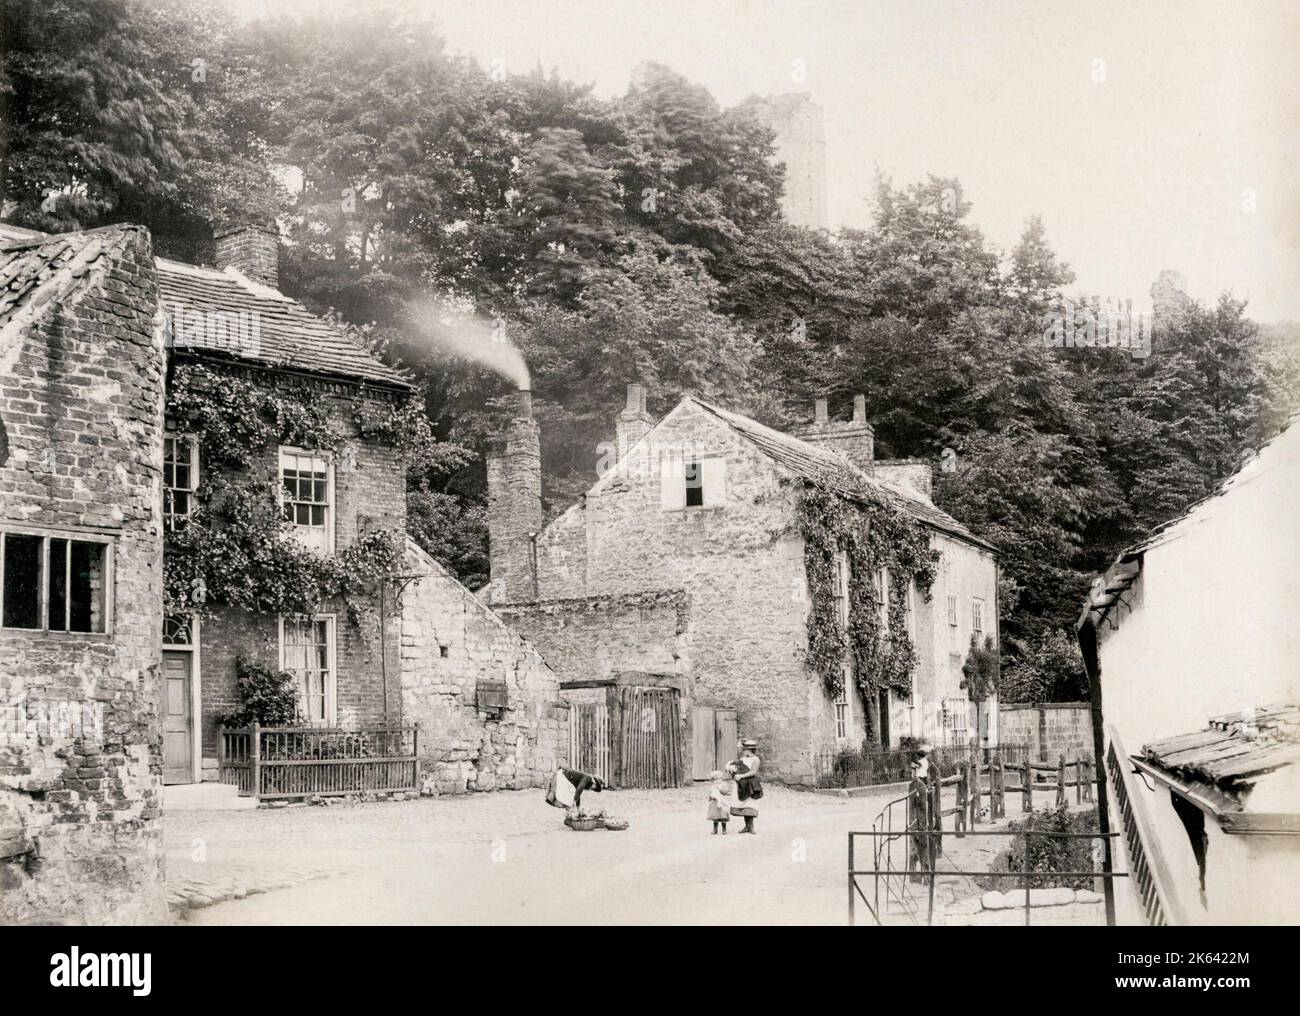 Vista de la calle de las casas de campo en Knareborough, Yorkshire. Fotografía vintage del siglo 19th. Foto de stock